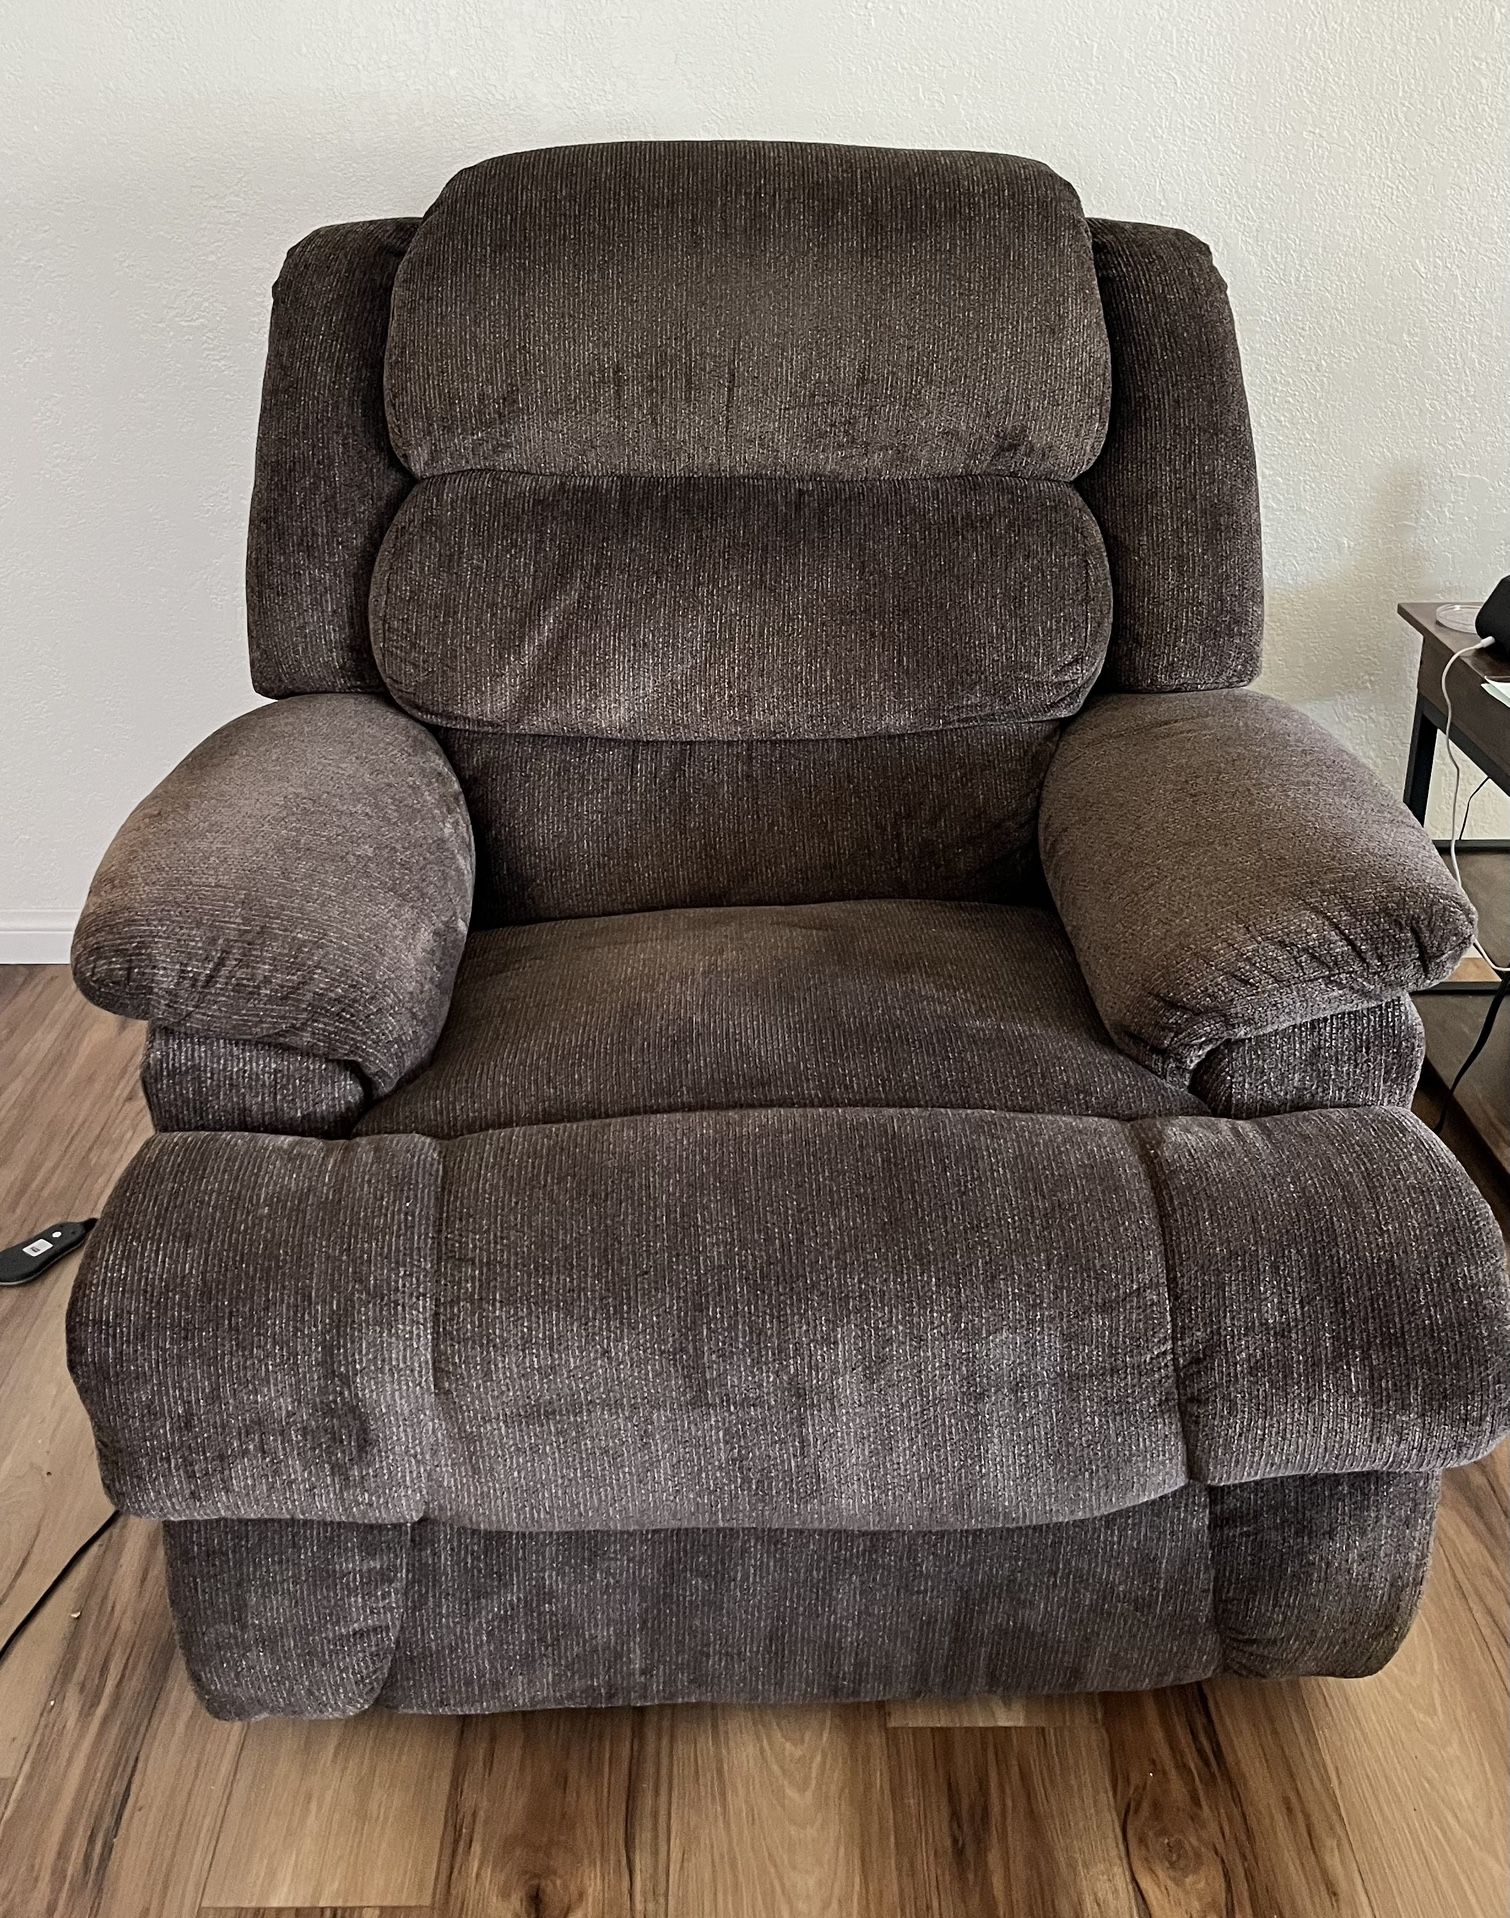 Oversized Heat/massage Recliner Chair